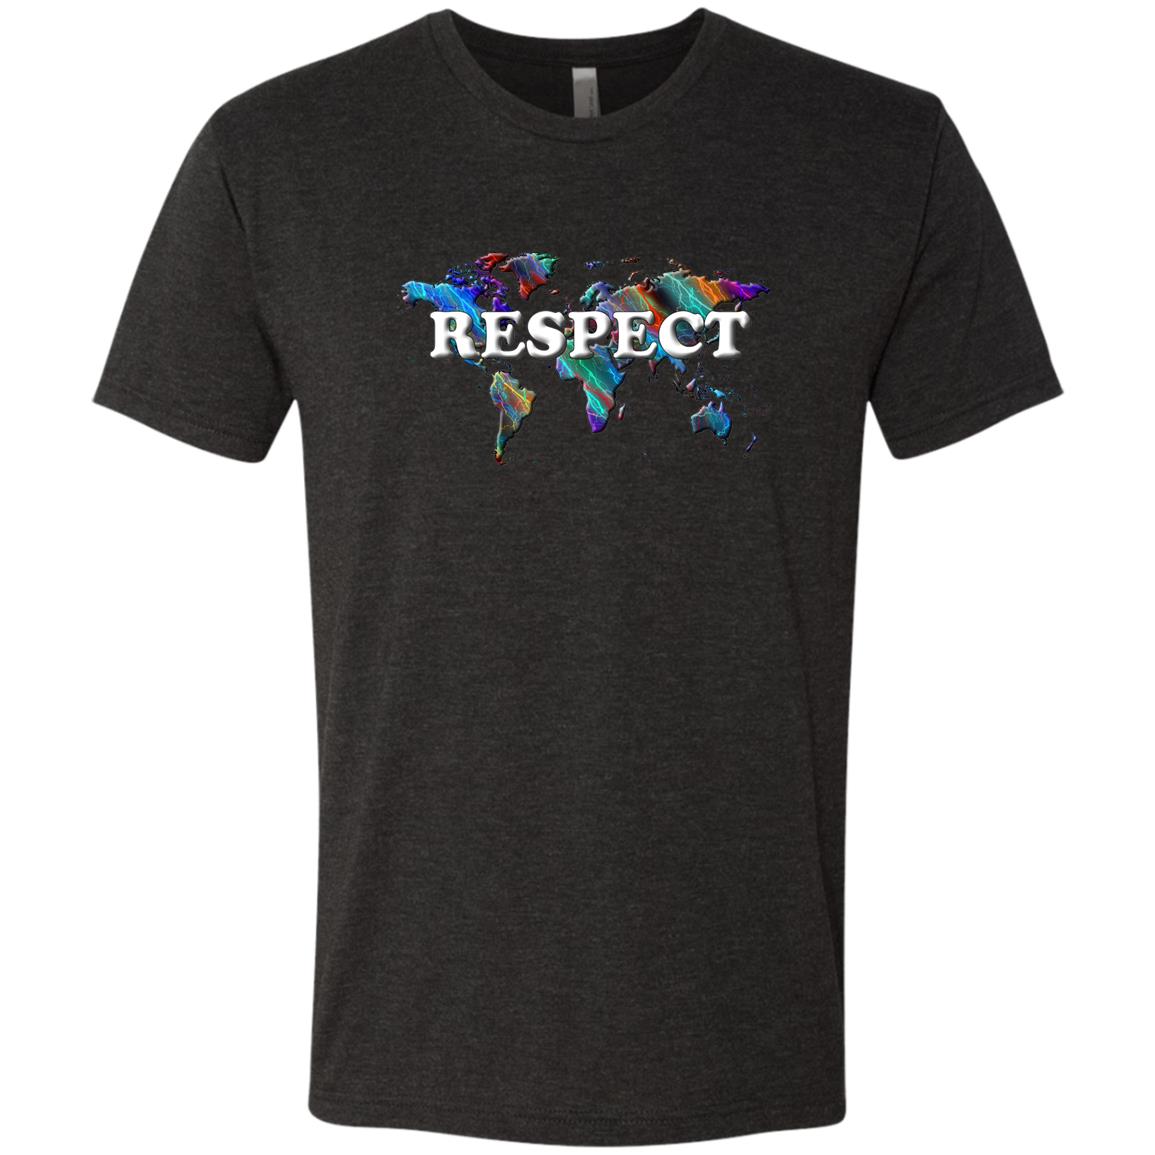 Respect Statement T-Shirt